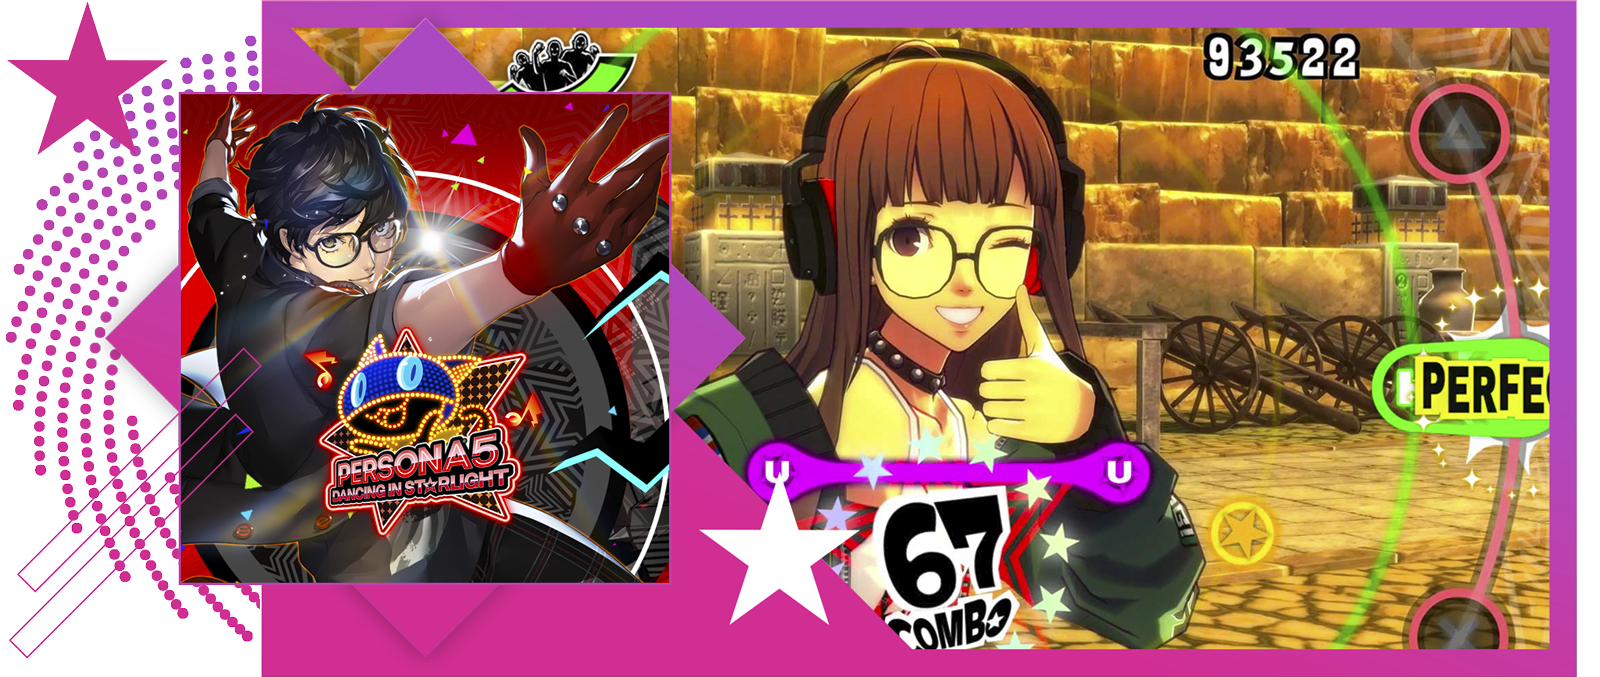 Bedste rytmespil-funktionsbillede med nøglegrafik og gameplay fra Persona 5: Dancing in Starlight